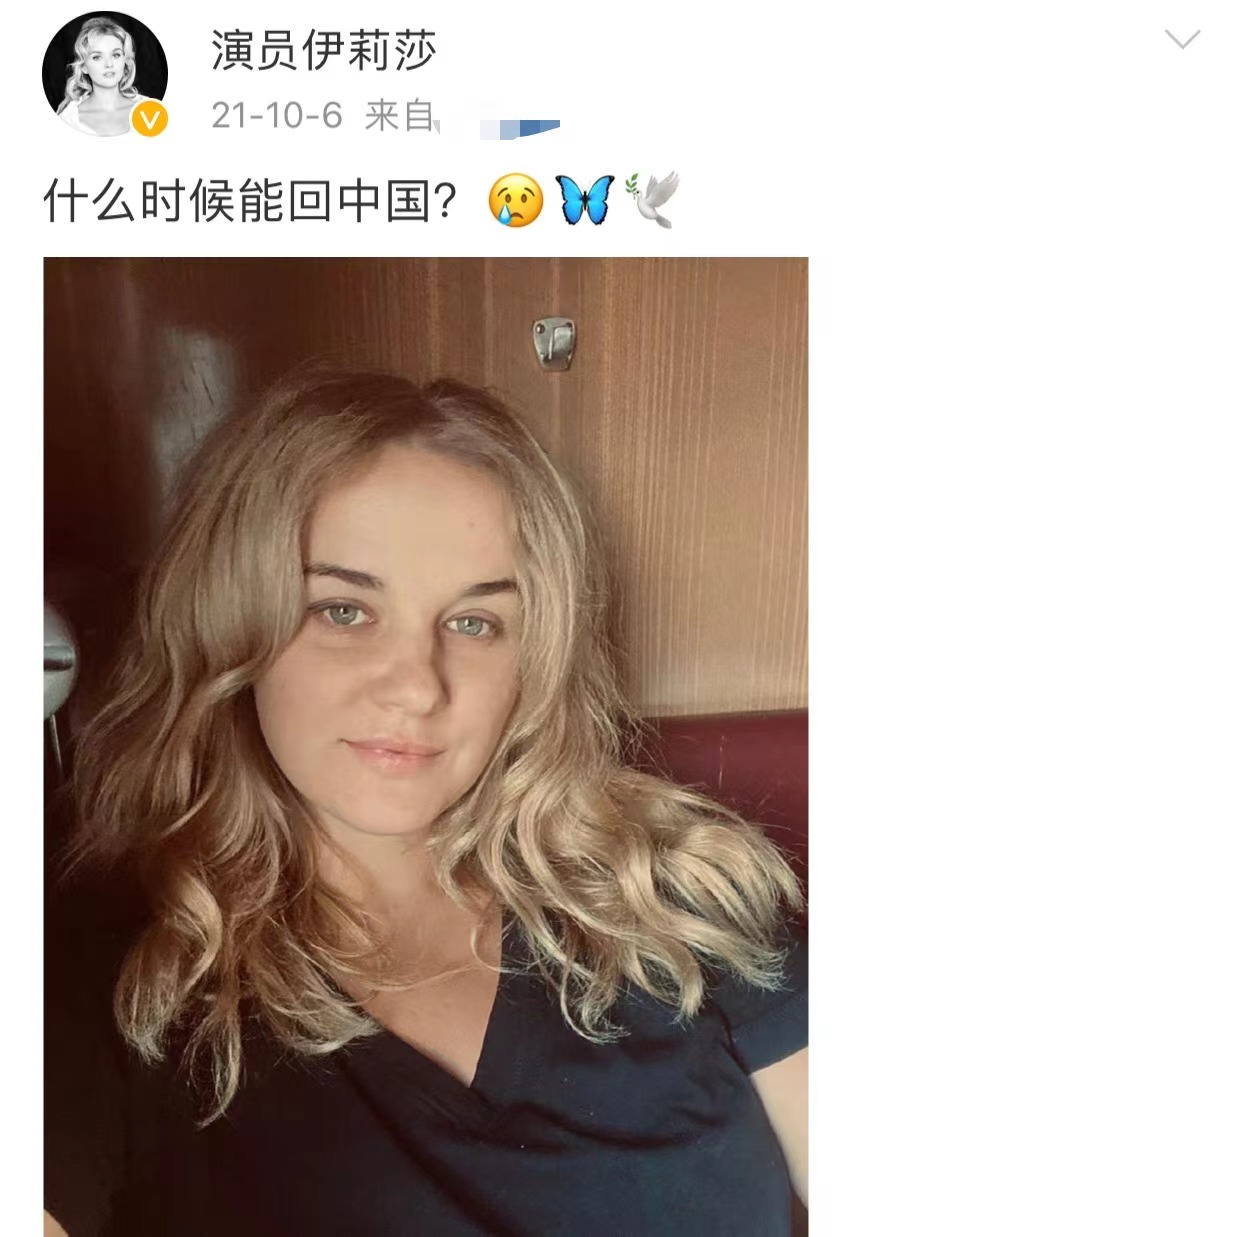 乌克兰女星自制炸弹自保(曾表示很想念中国,想回中国)